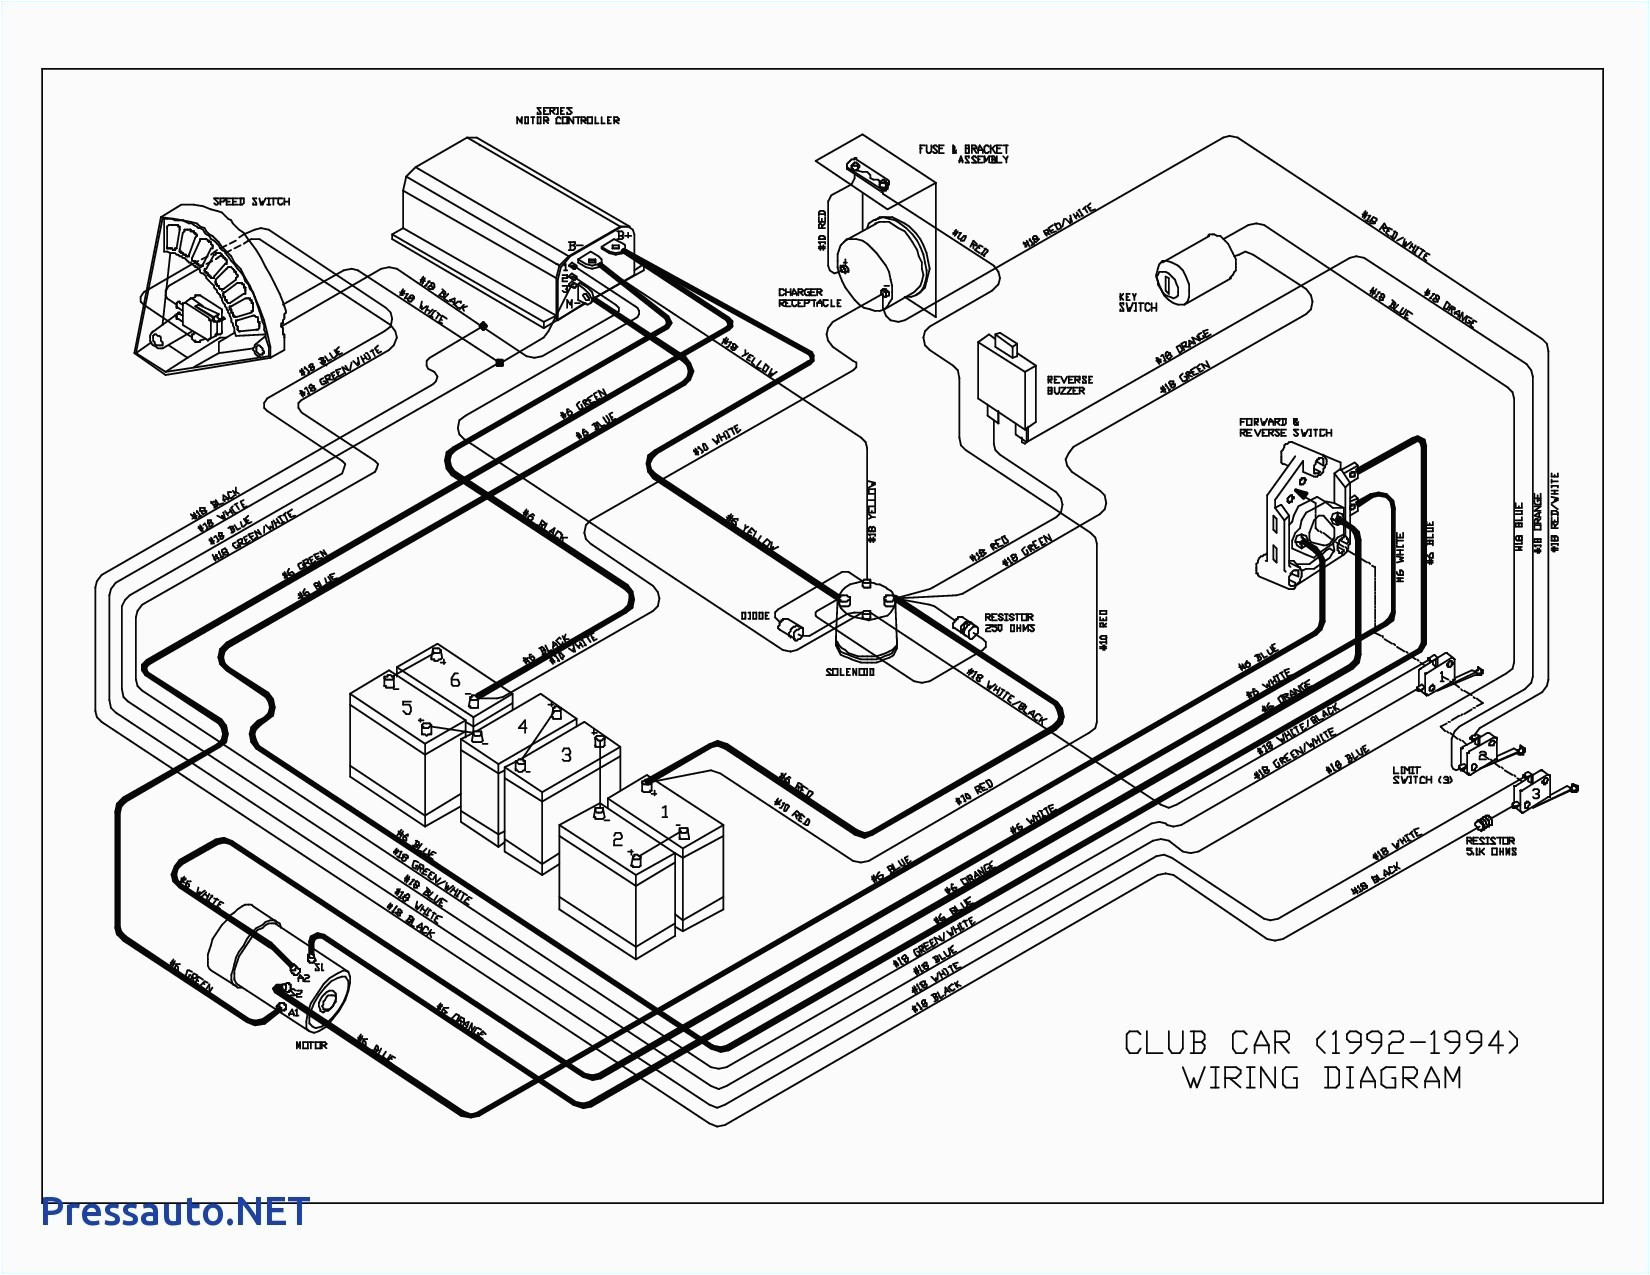 club cart wiring schematics wire center and diagram jpg